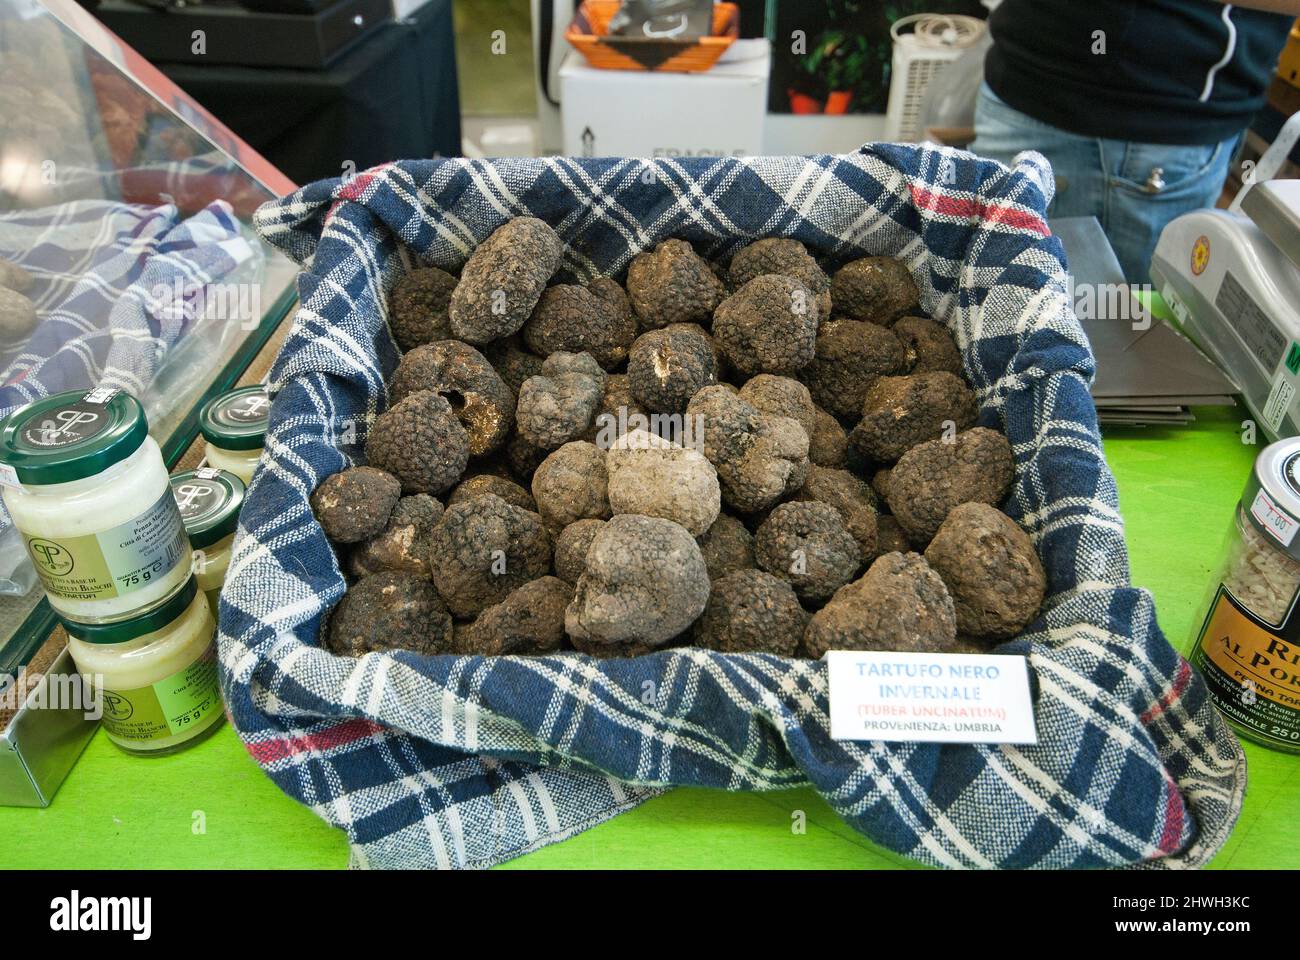 Winter black truffles (Tuber uncinatum) for sale, Città di Castello, Umbria, Italy Stock Photo